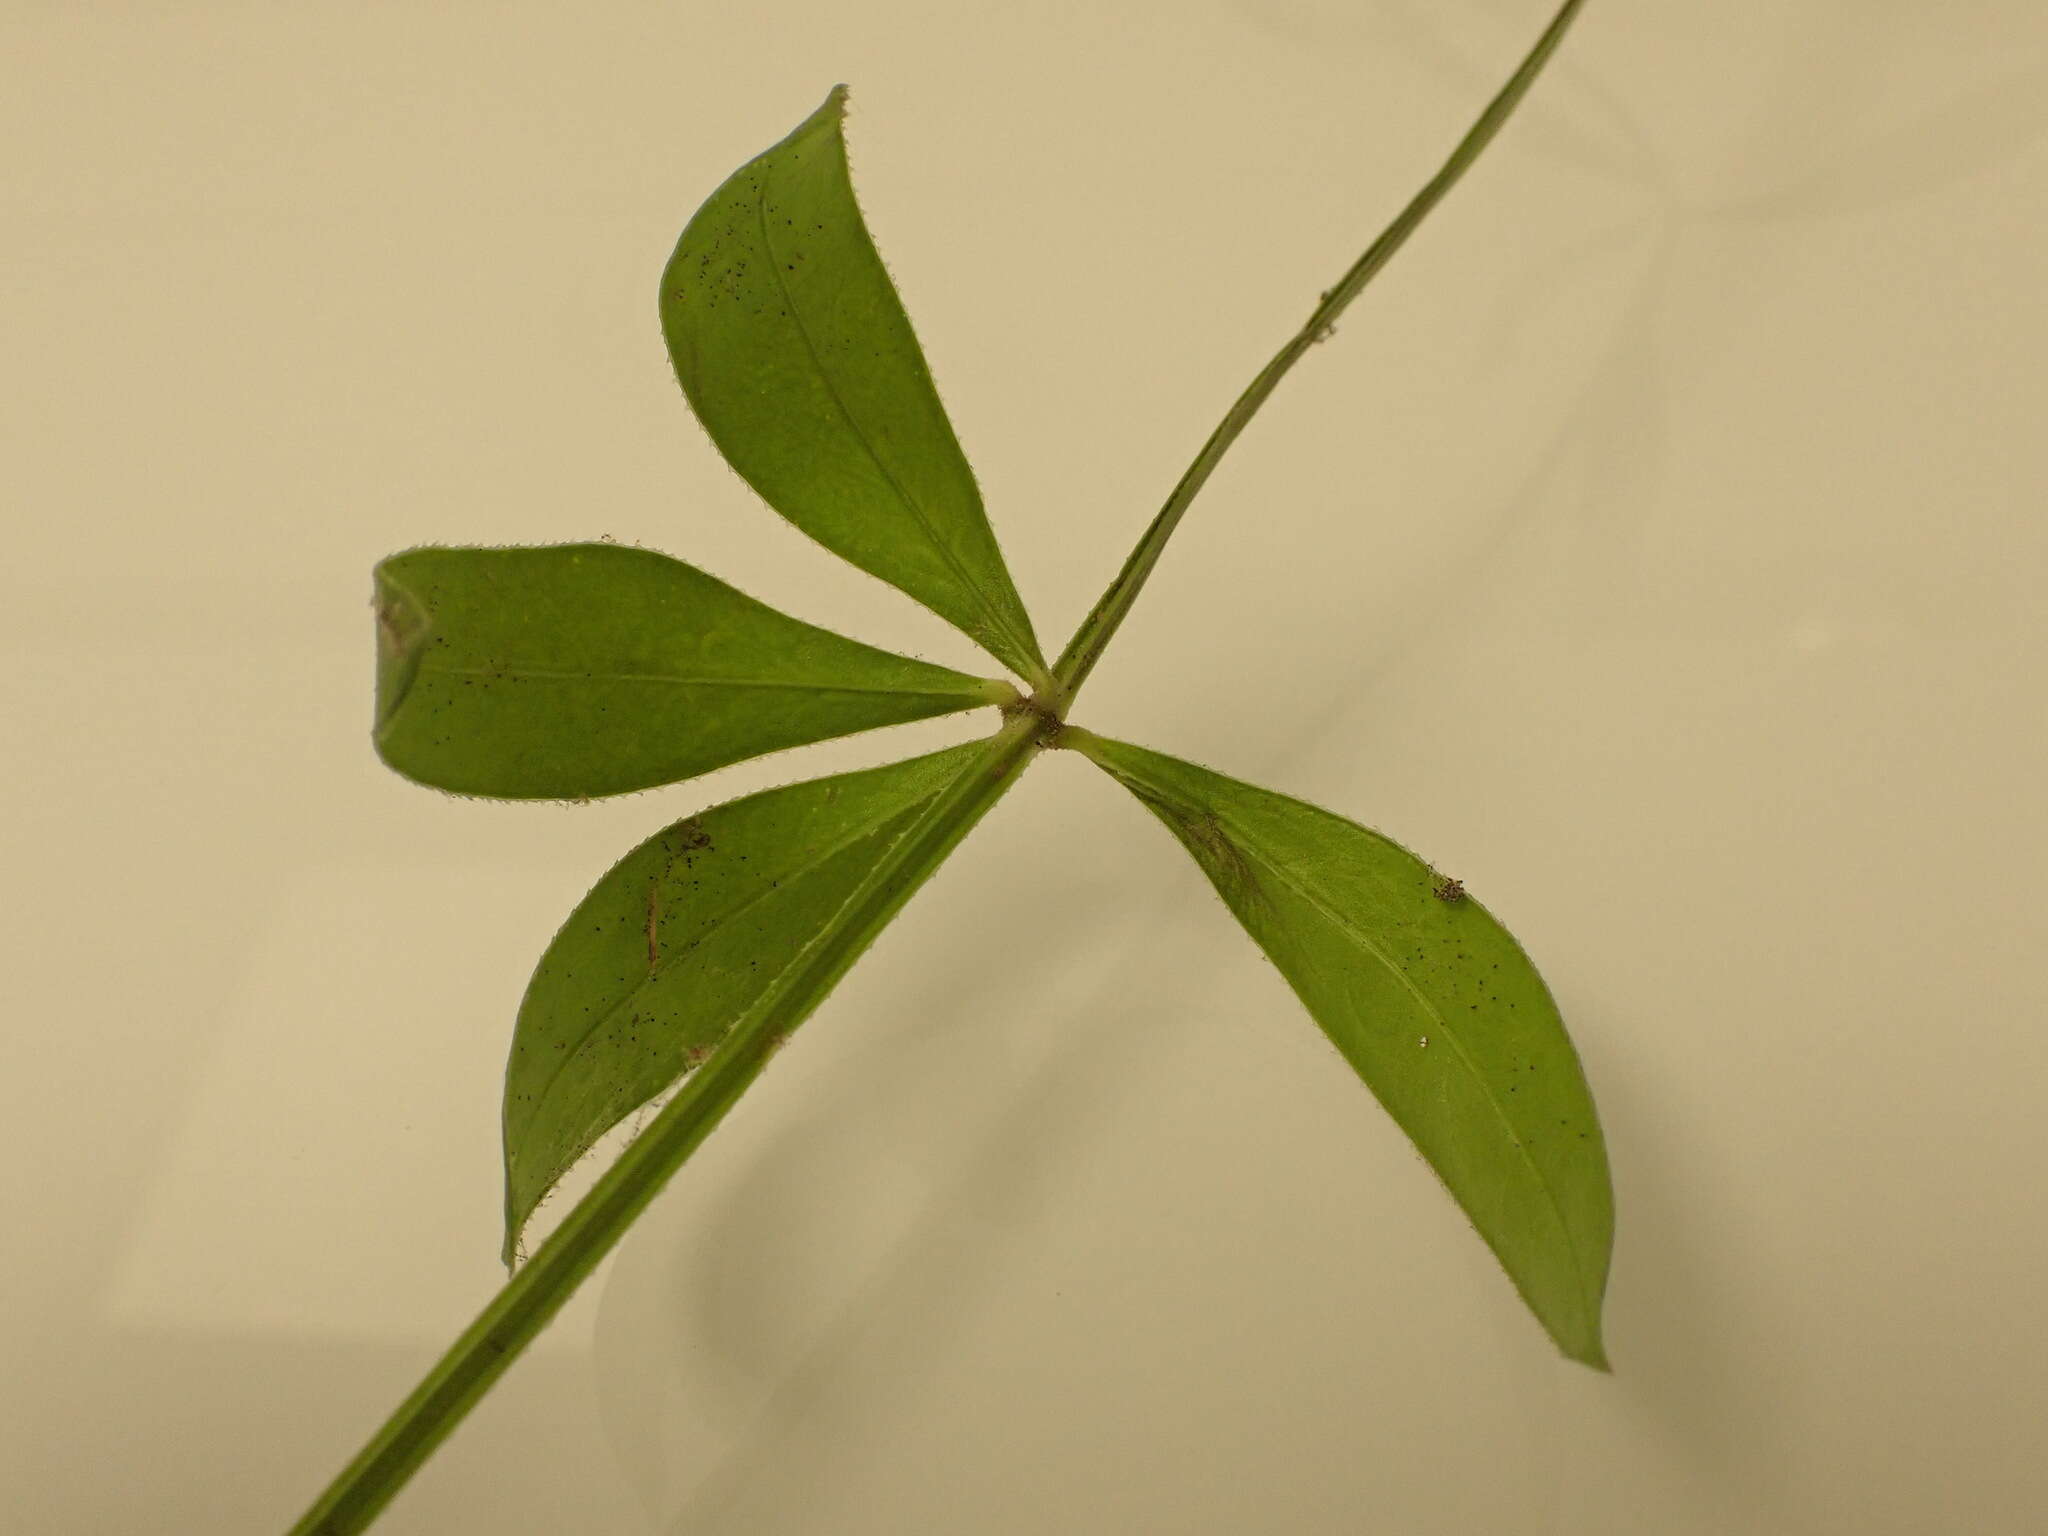 Image of <i>Rubia <i>peregrina</i></i> subsp. peregrina